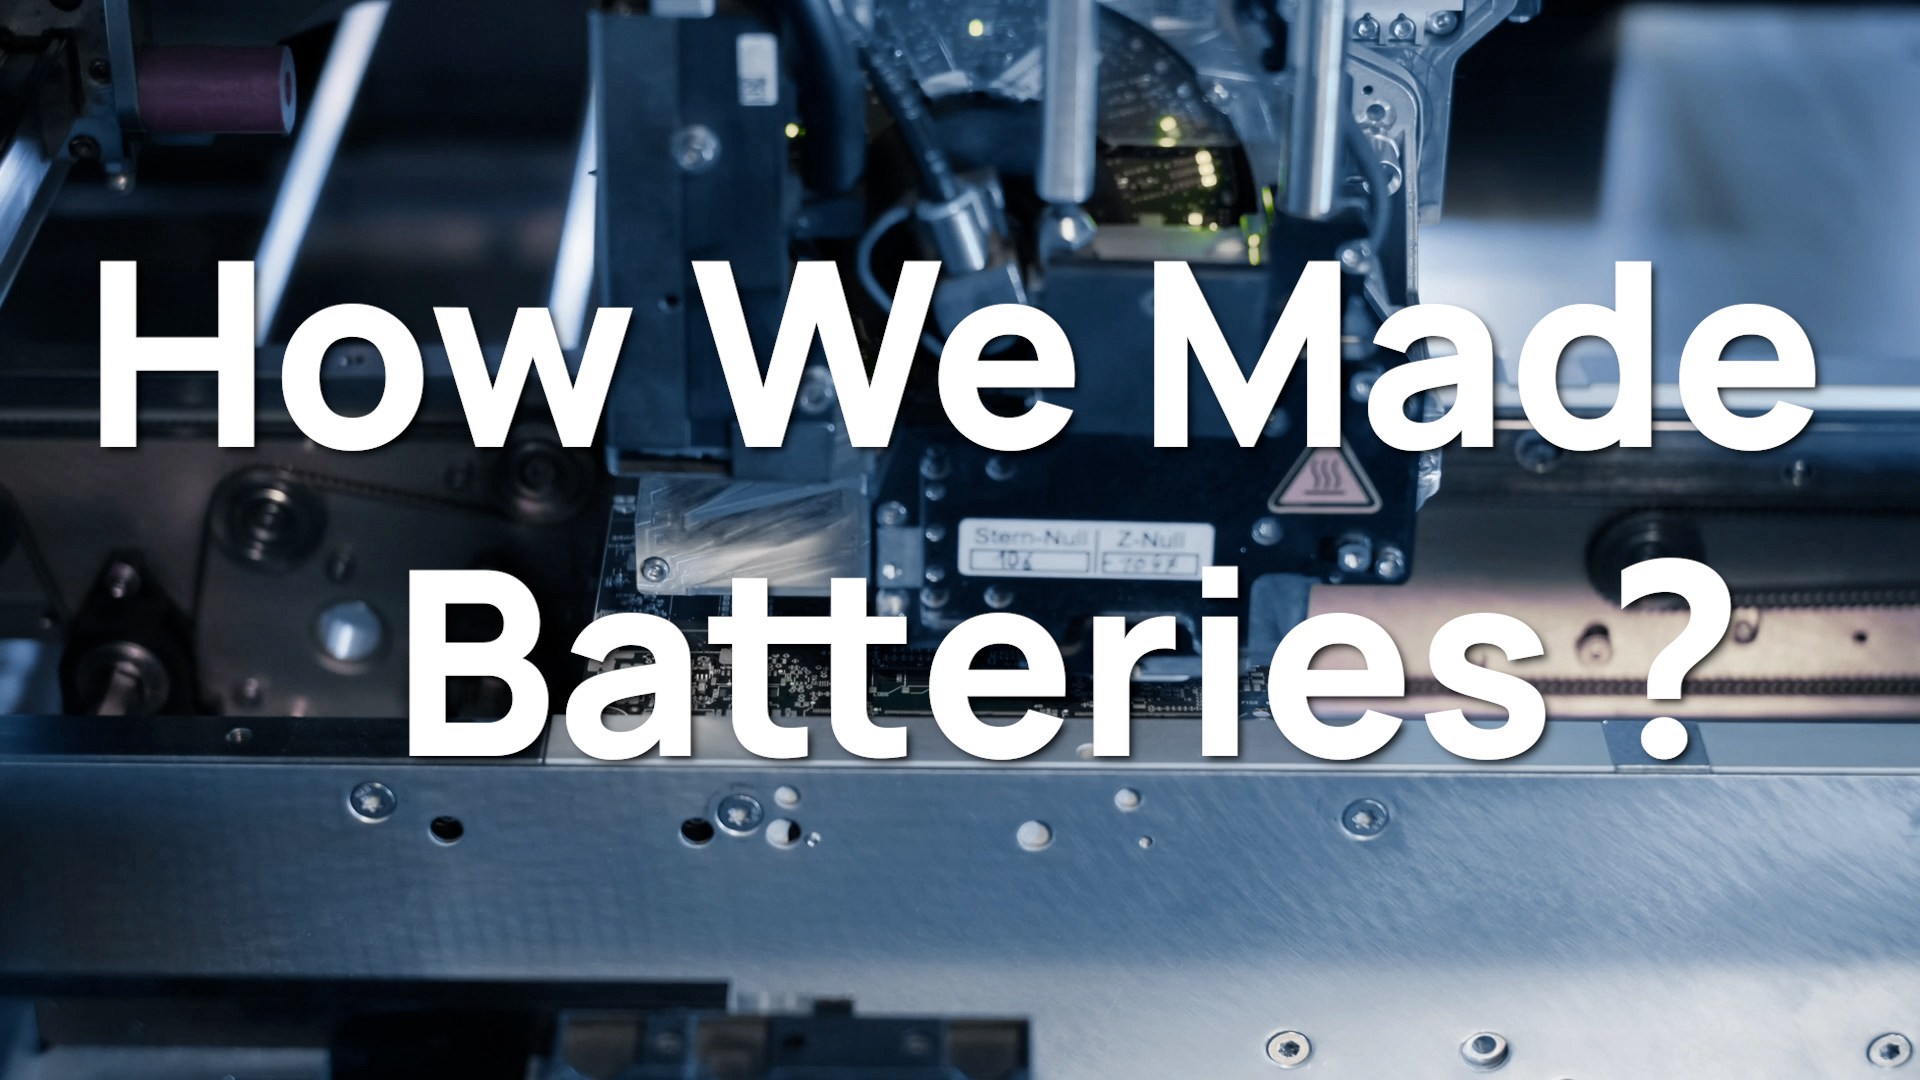 Aperçu intérieur : processus de fabrication avancé de batteries au lithium d'ECO-Worthy